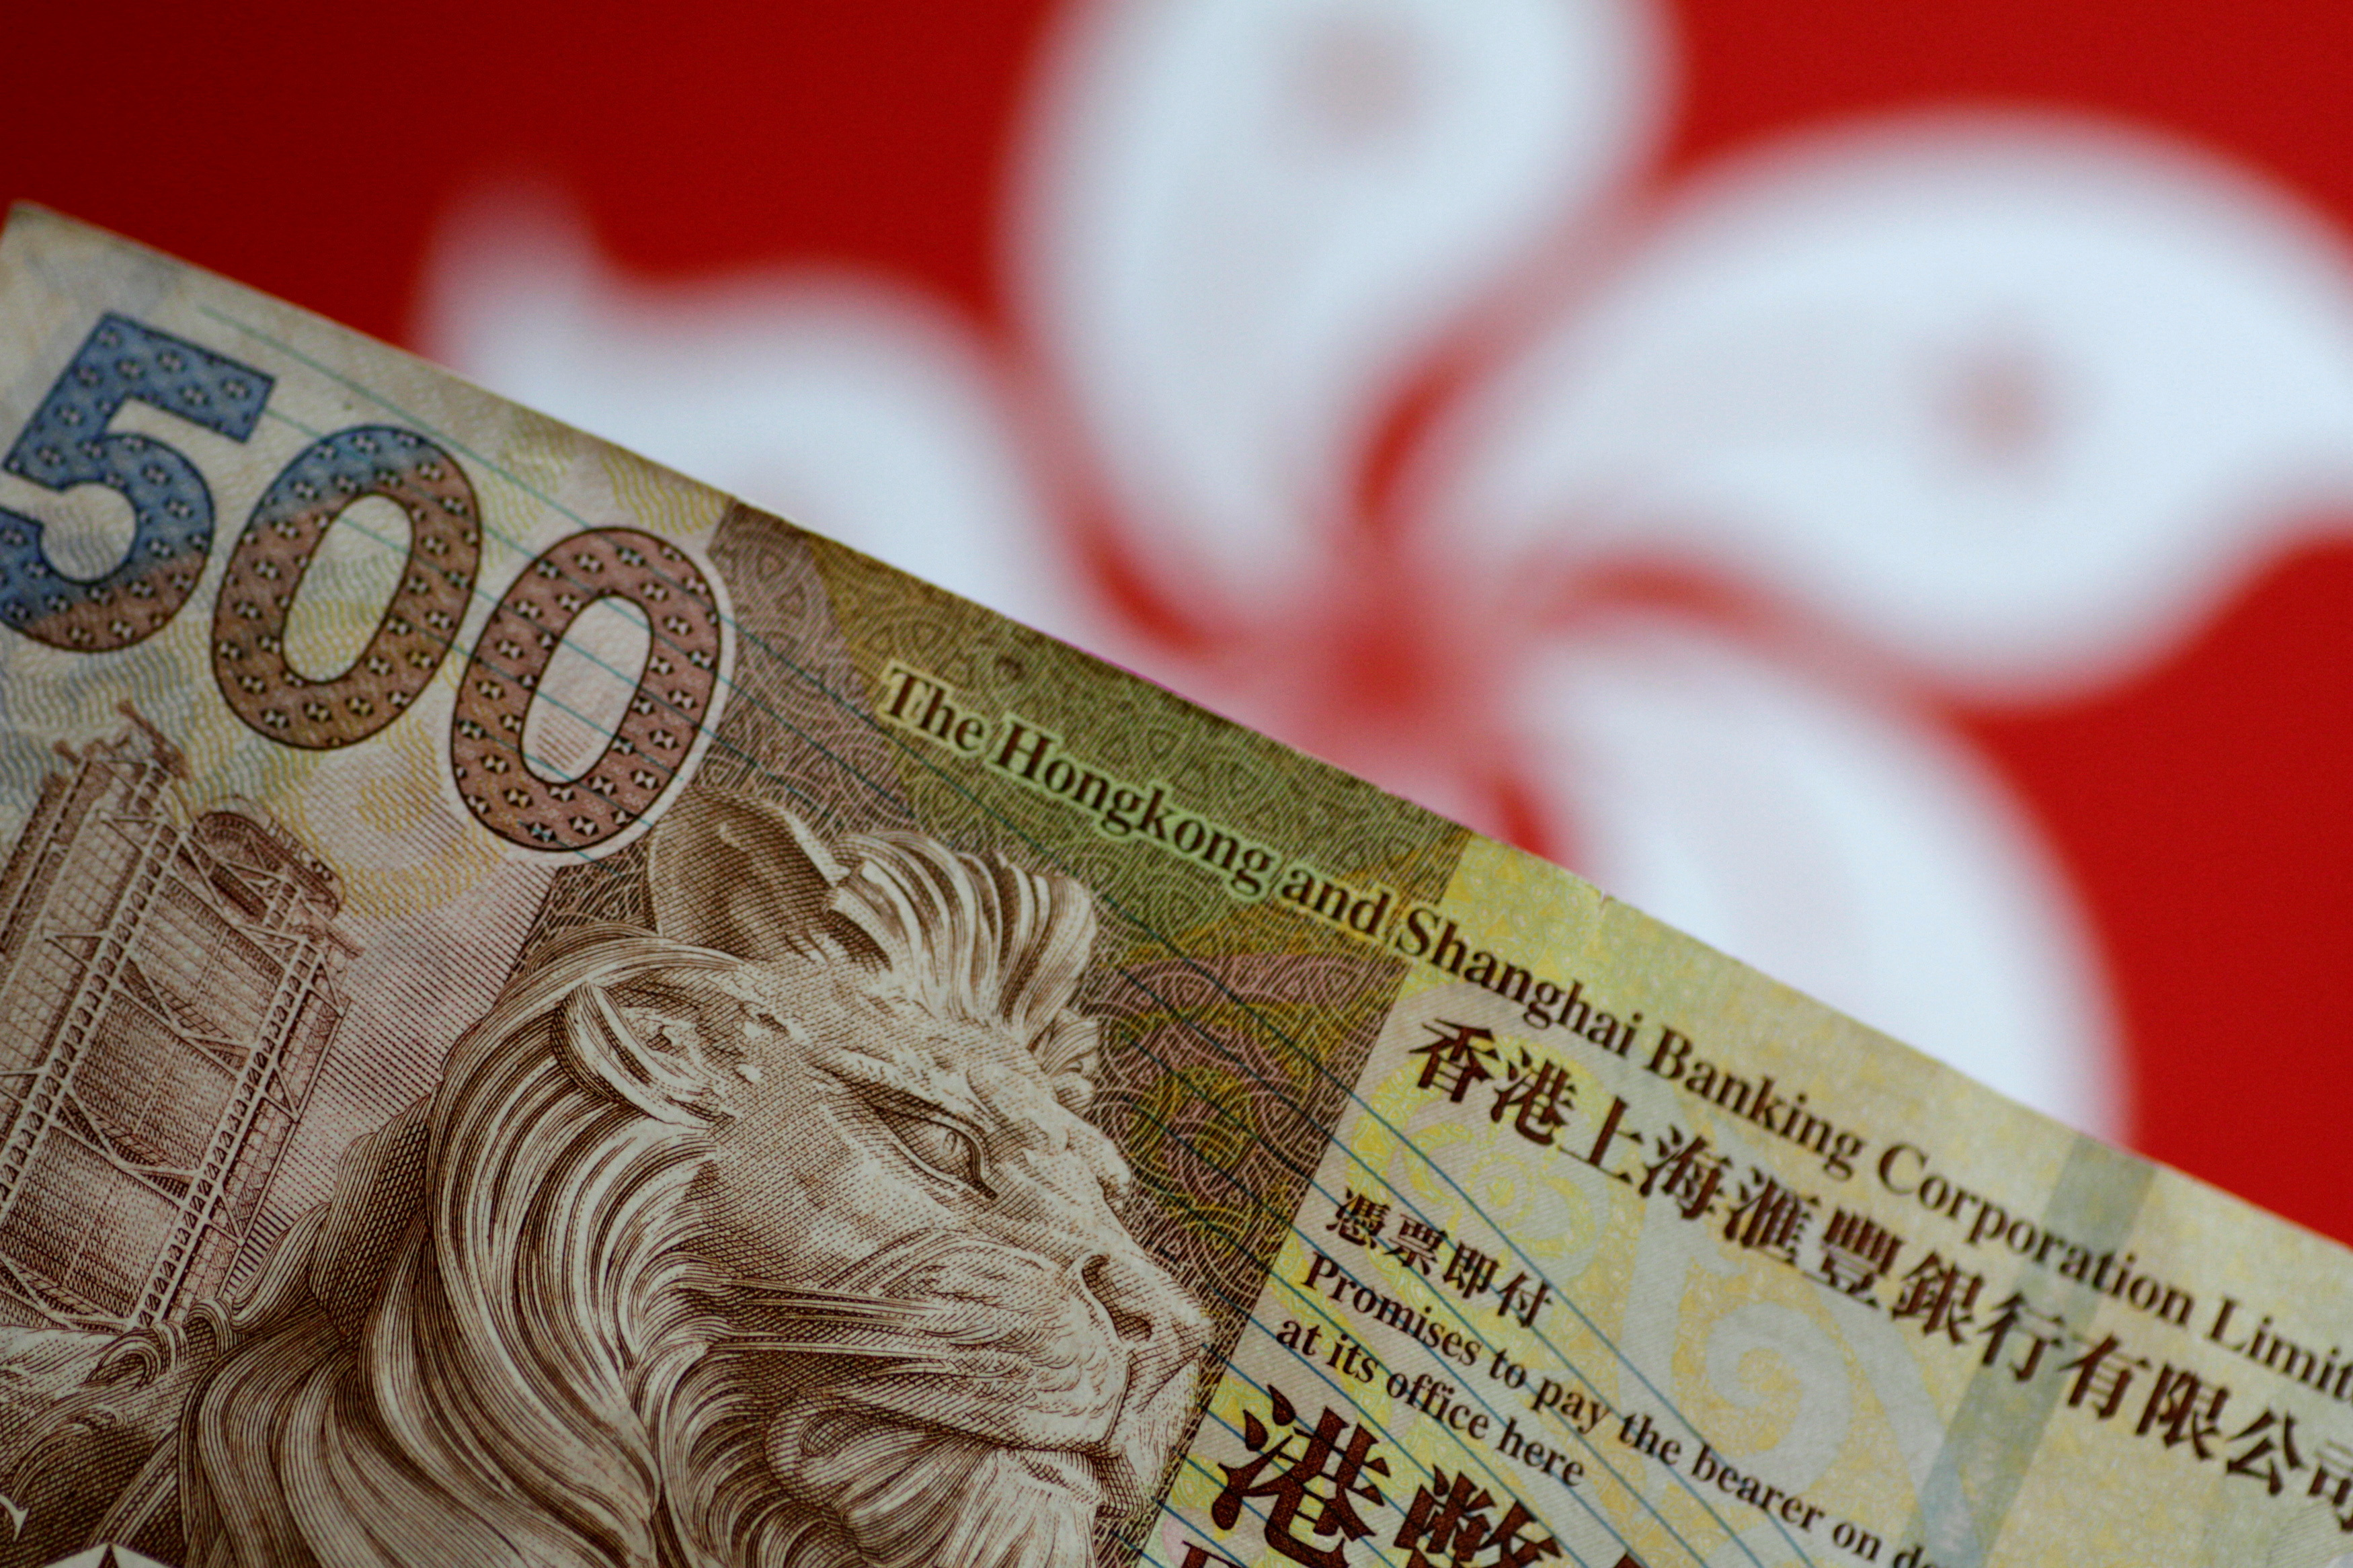 Illustration photo of a Hong Kong dollar note